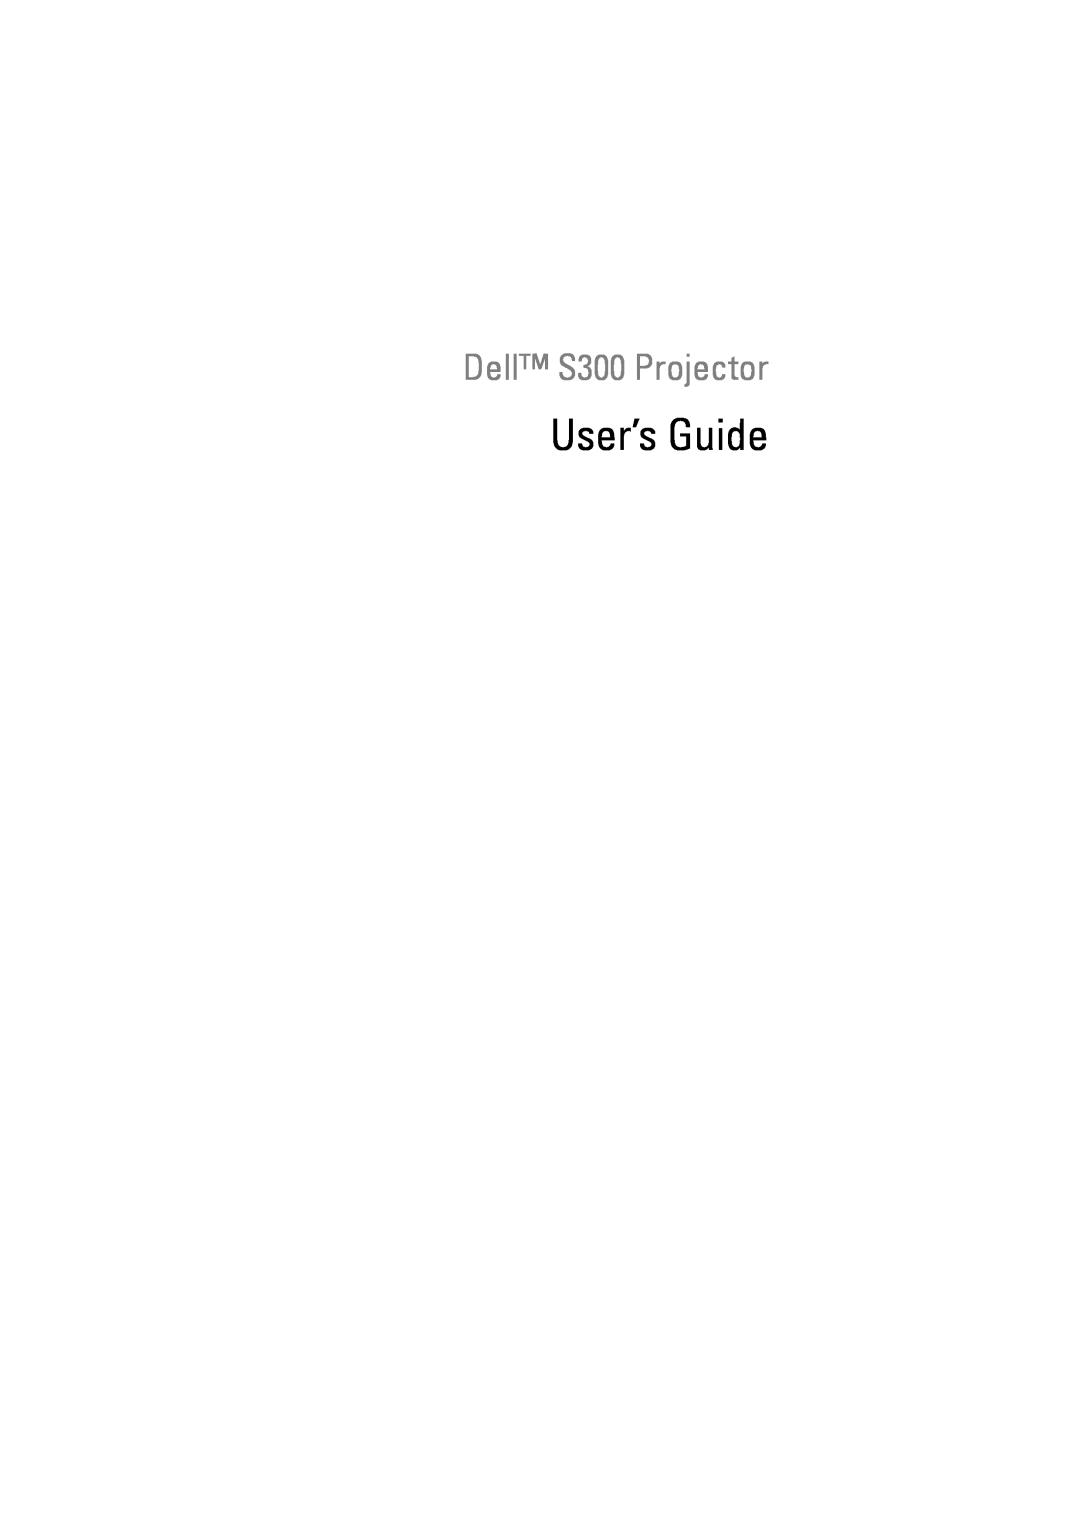 Dell manual User’s Guide, Dell S300 Projector 